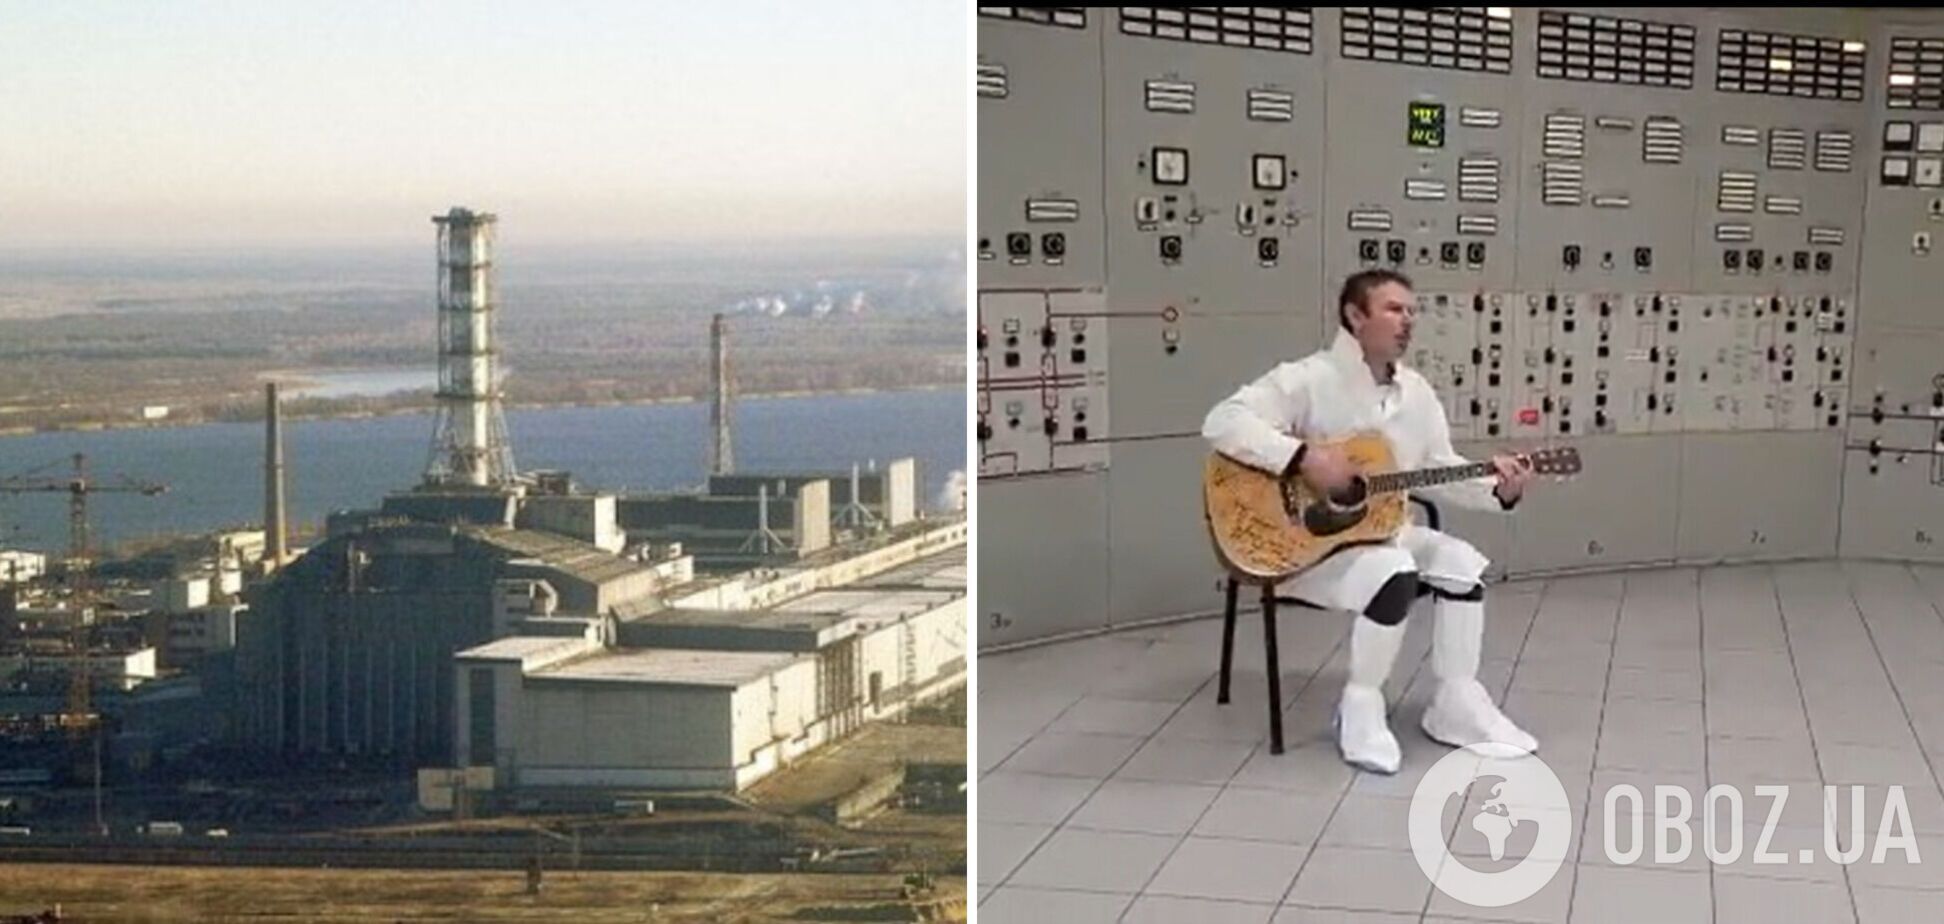 Вакарчук заспівав на Чорнобильській АЕС: відео незвичайного виступу